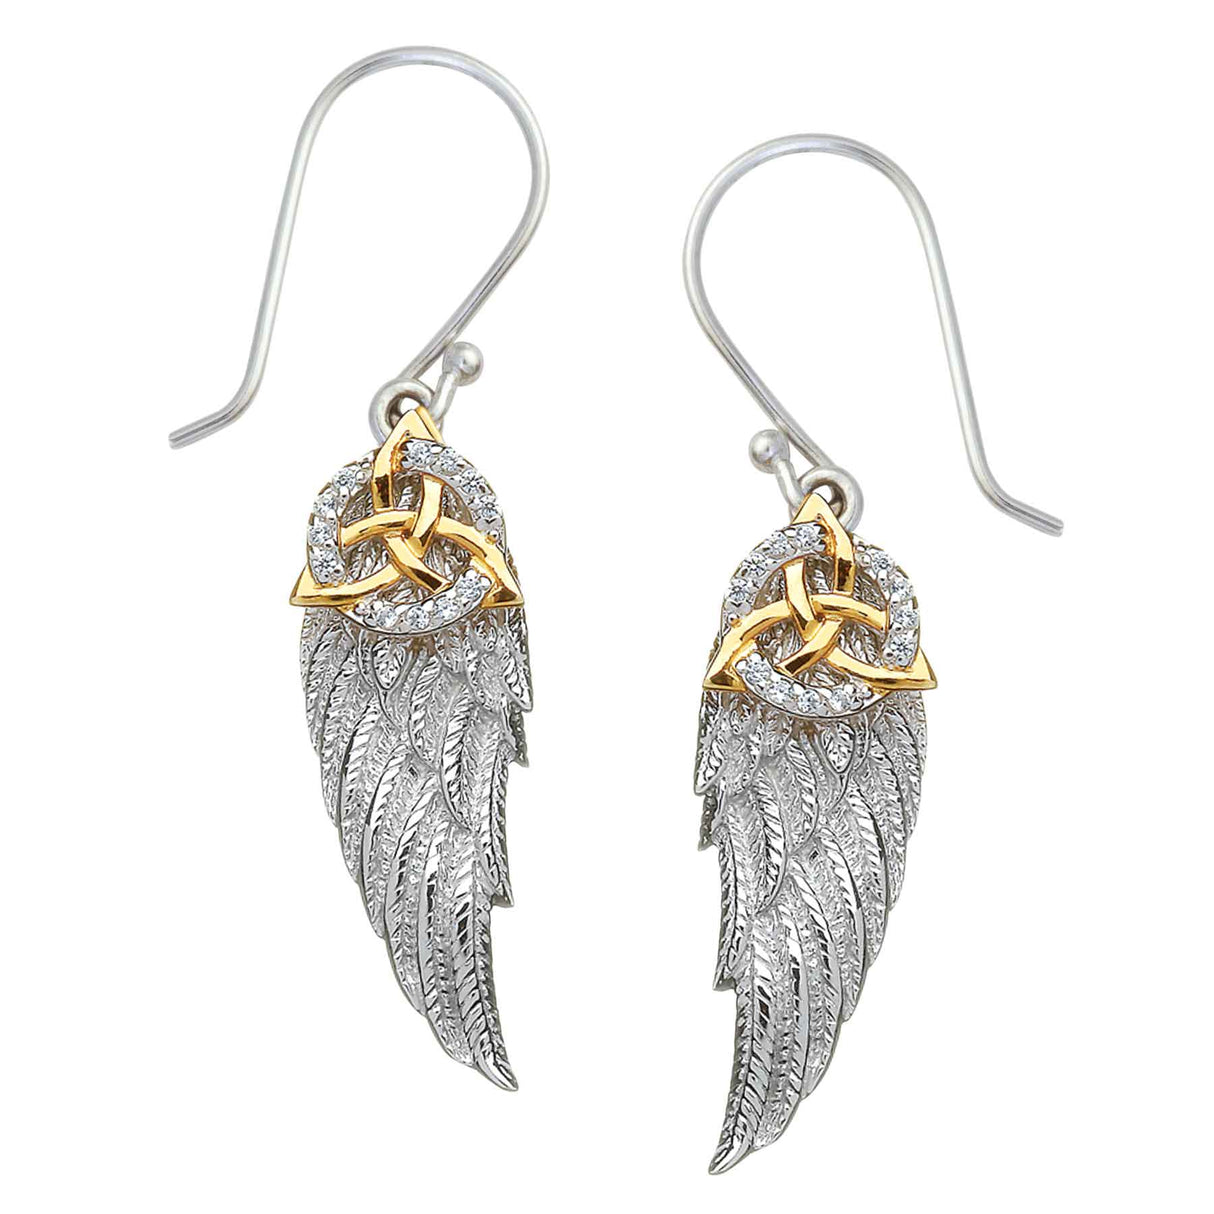 Trinity Knot Angel Wing Earrings